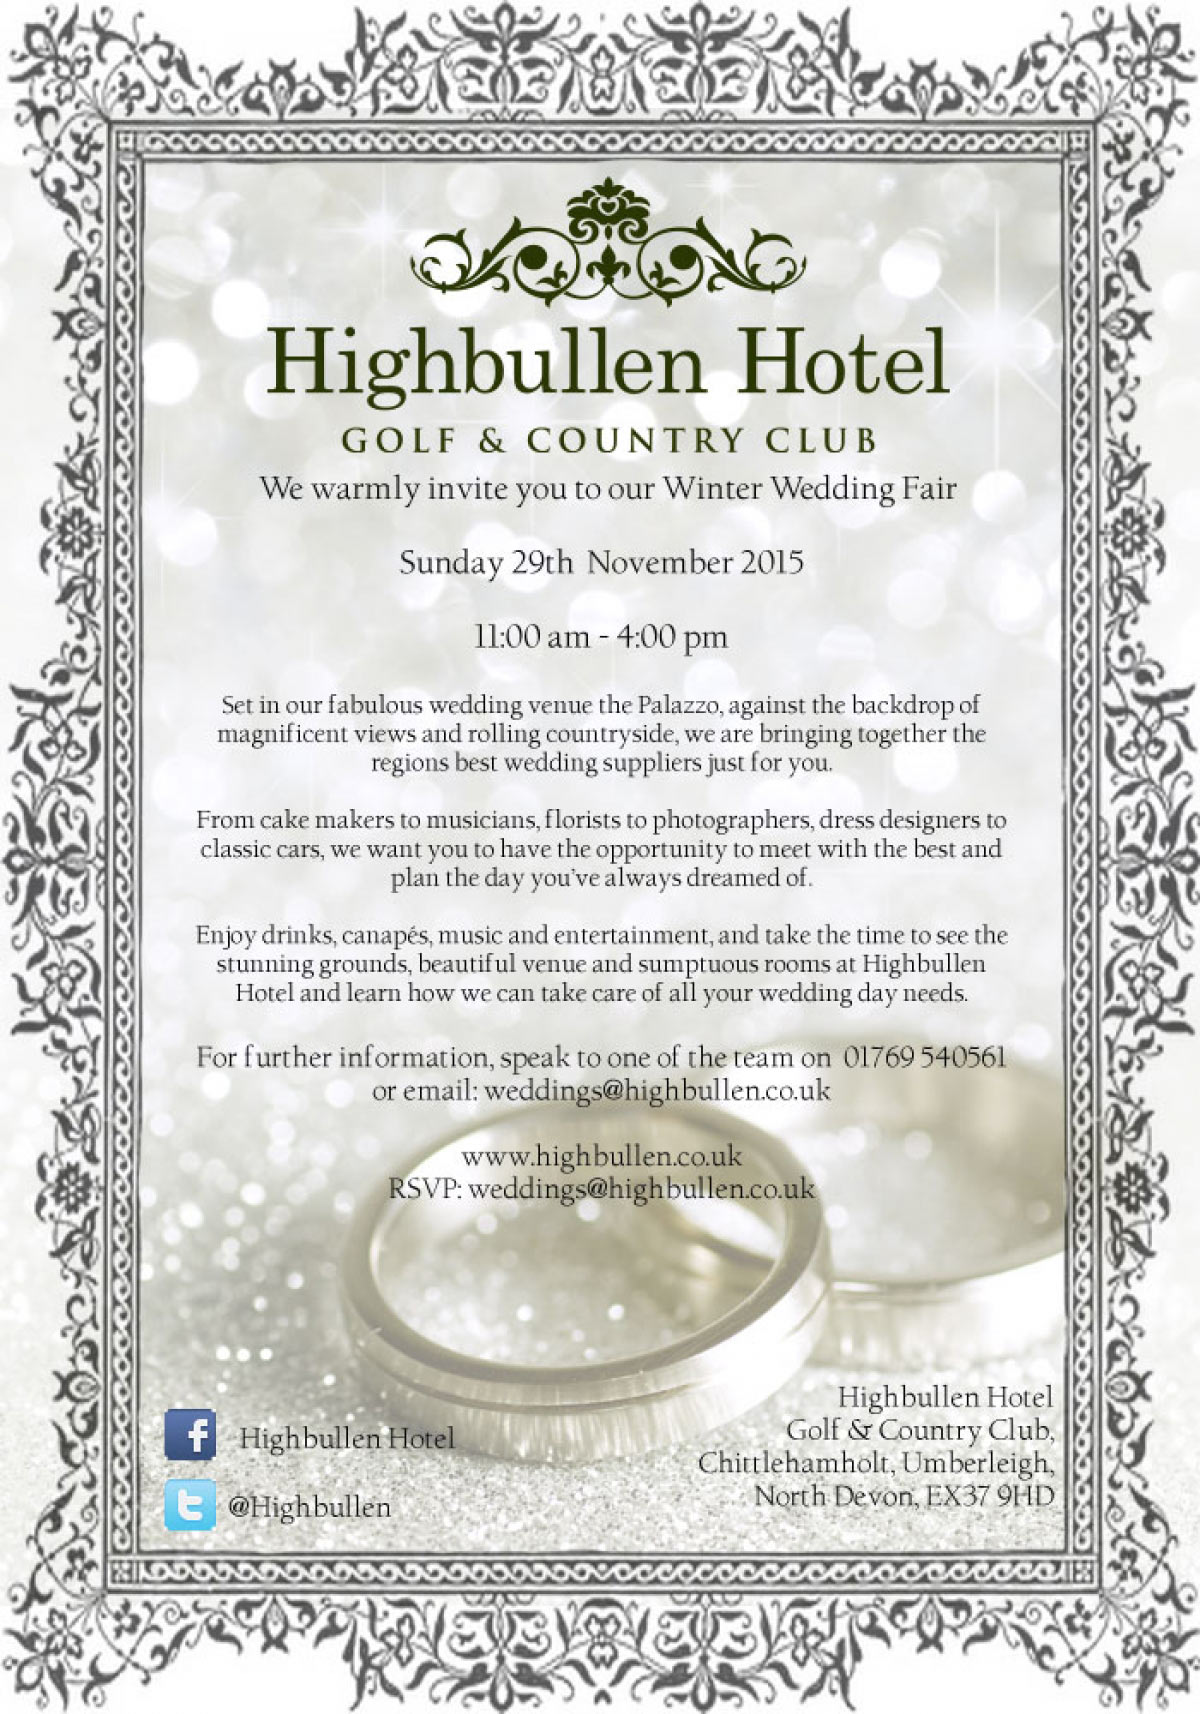 Highbullen Hotel Winter Wedding Fair